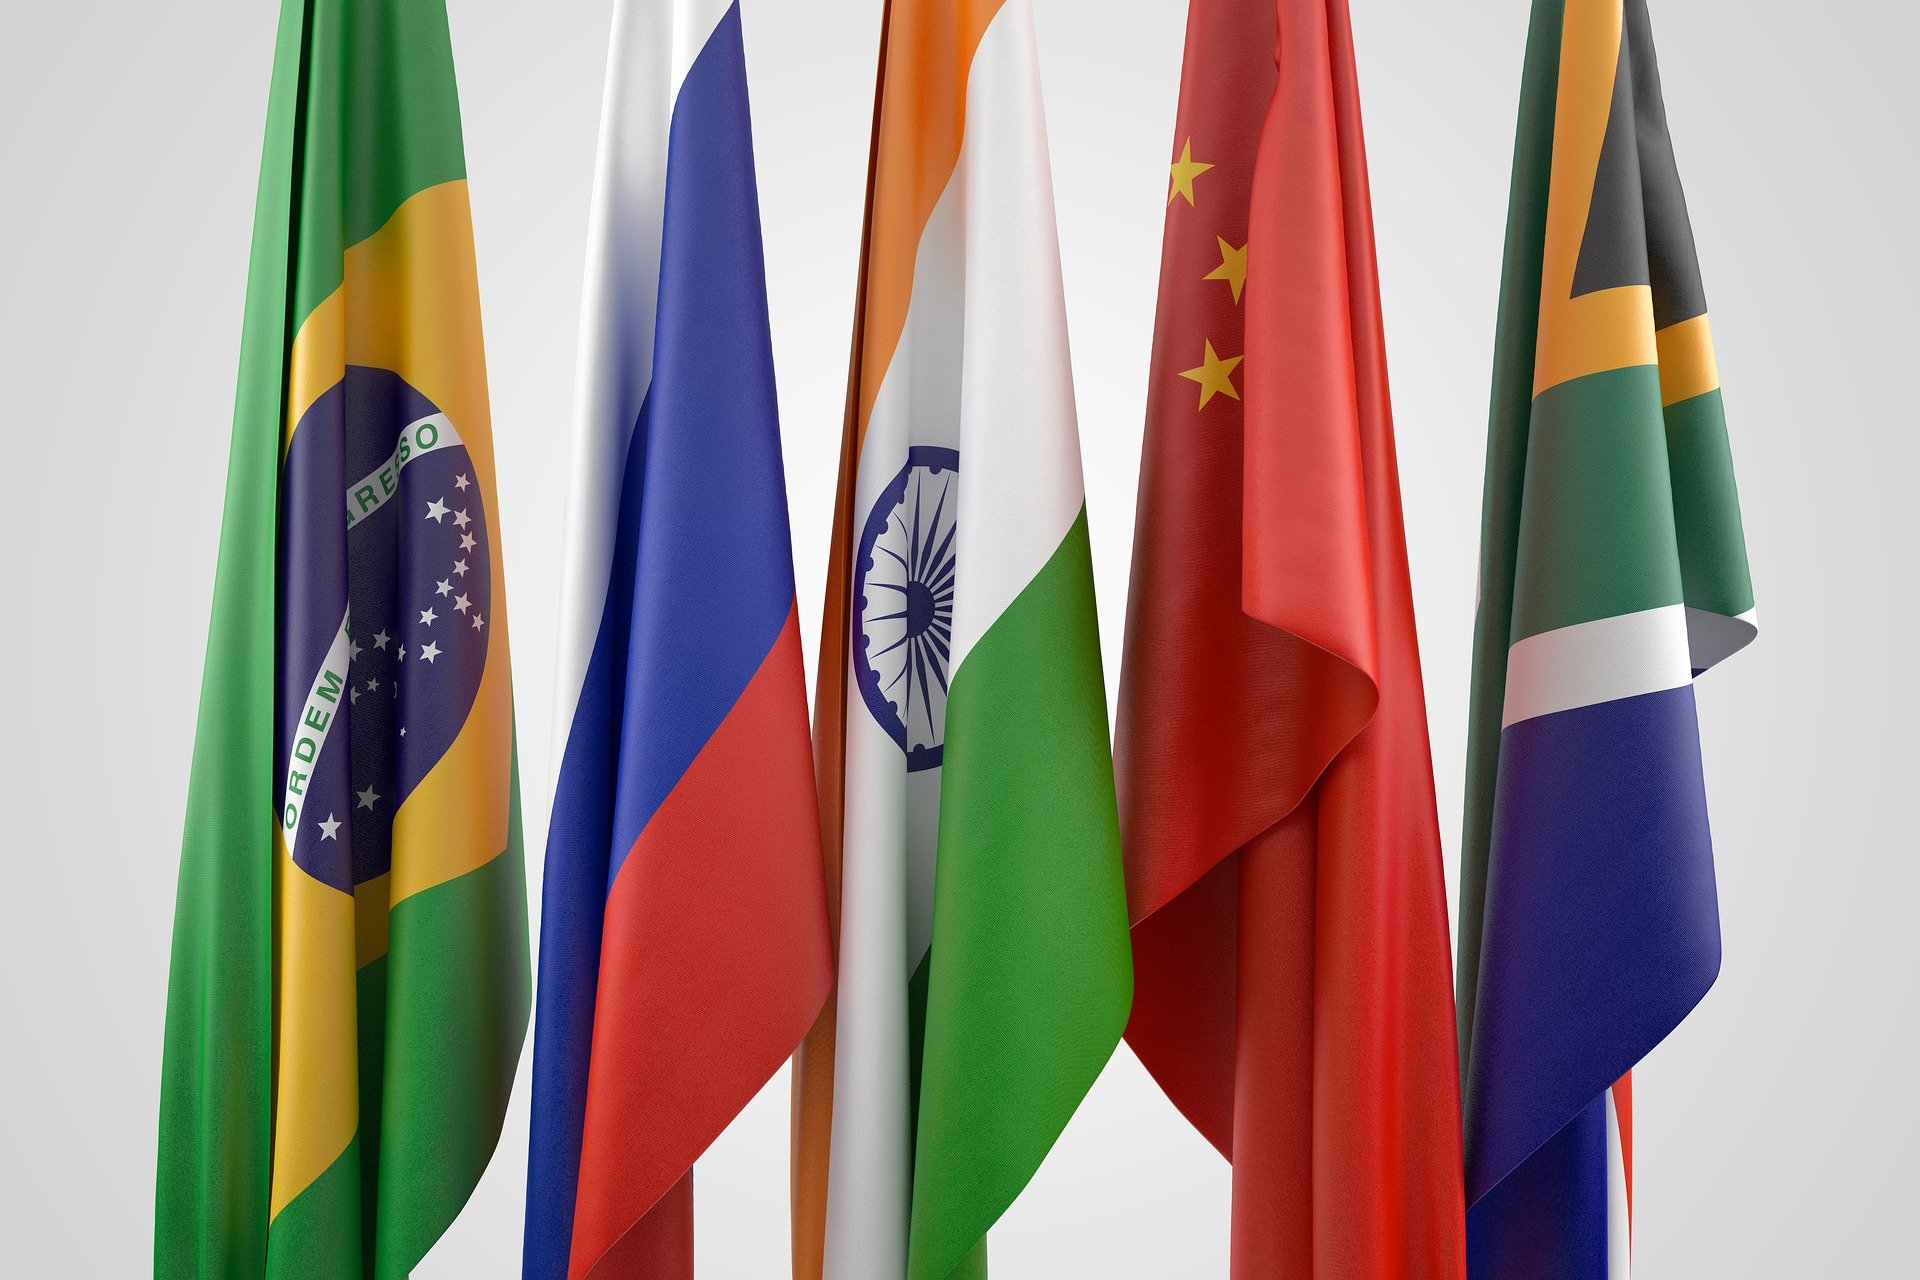 BRICS: S de South Africa (África do Sul)